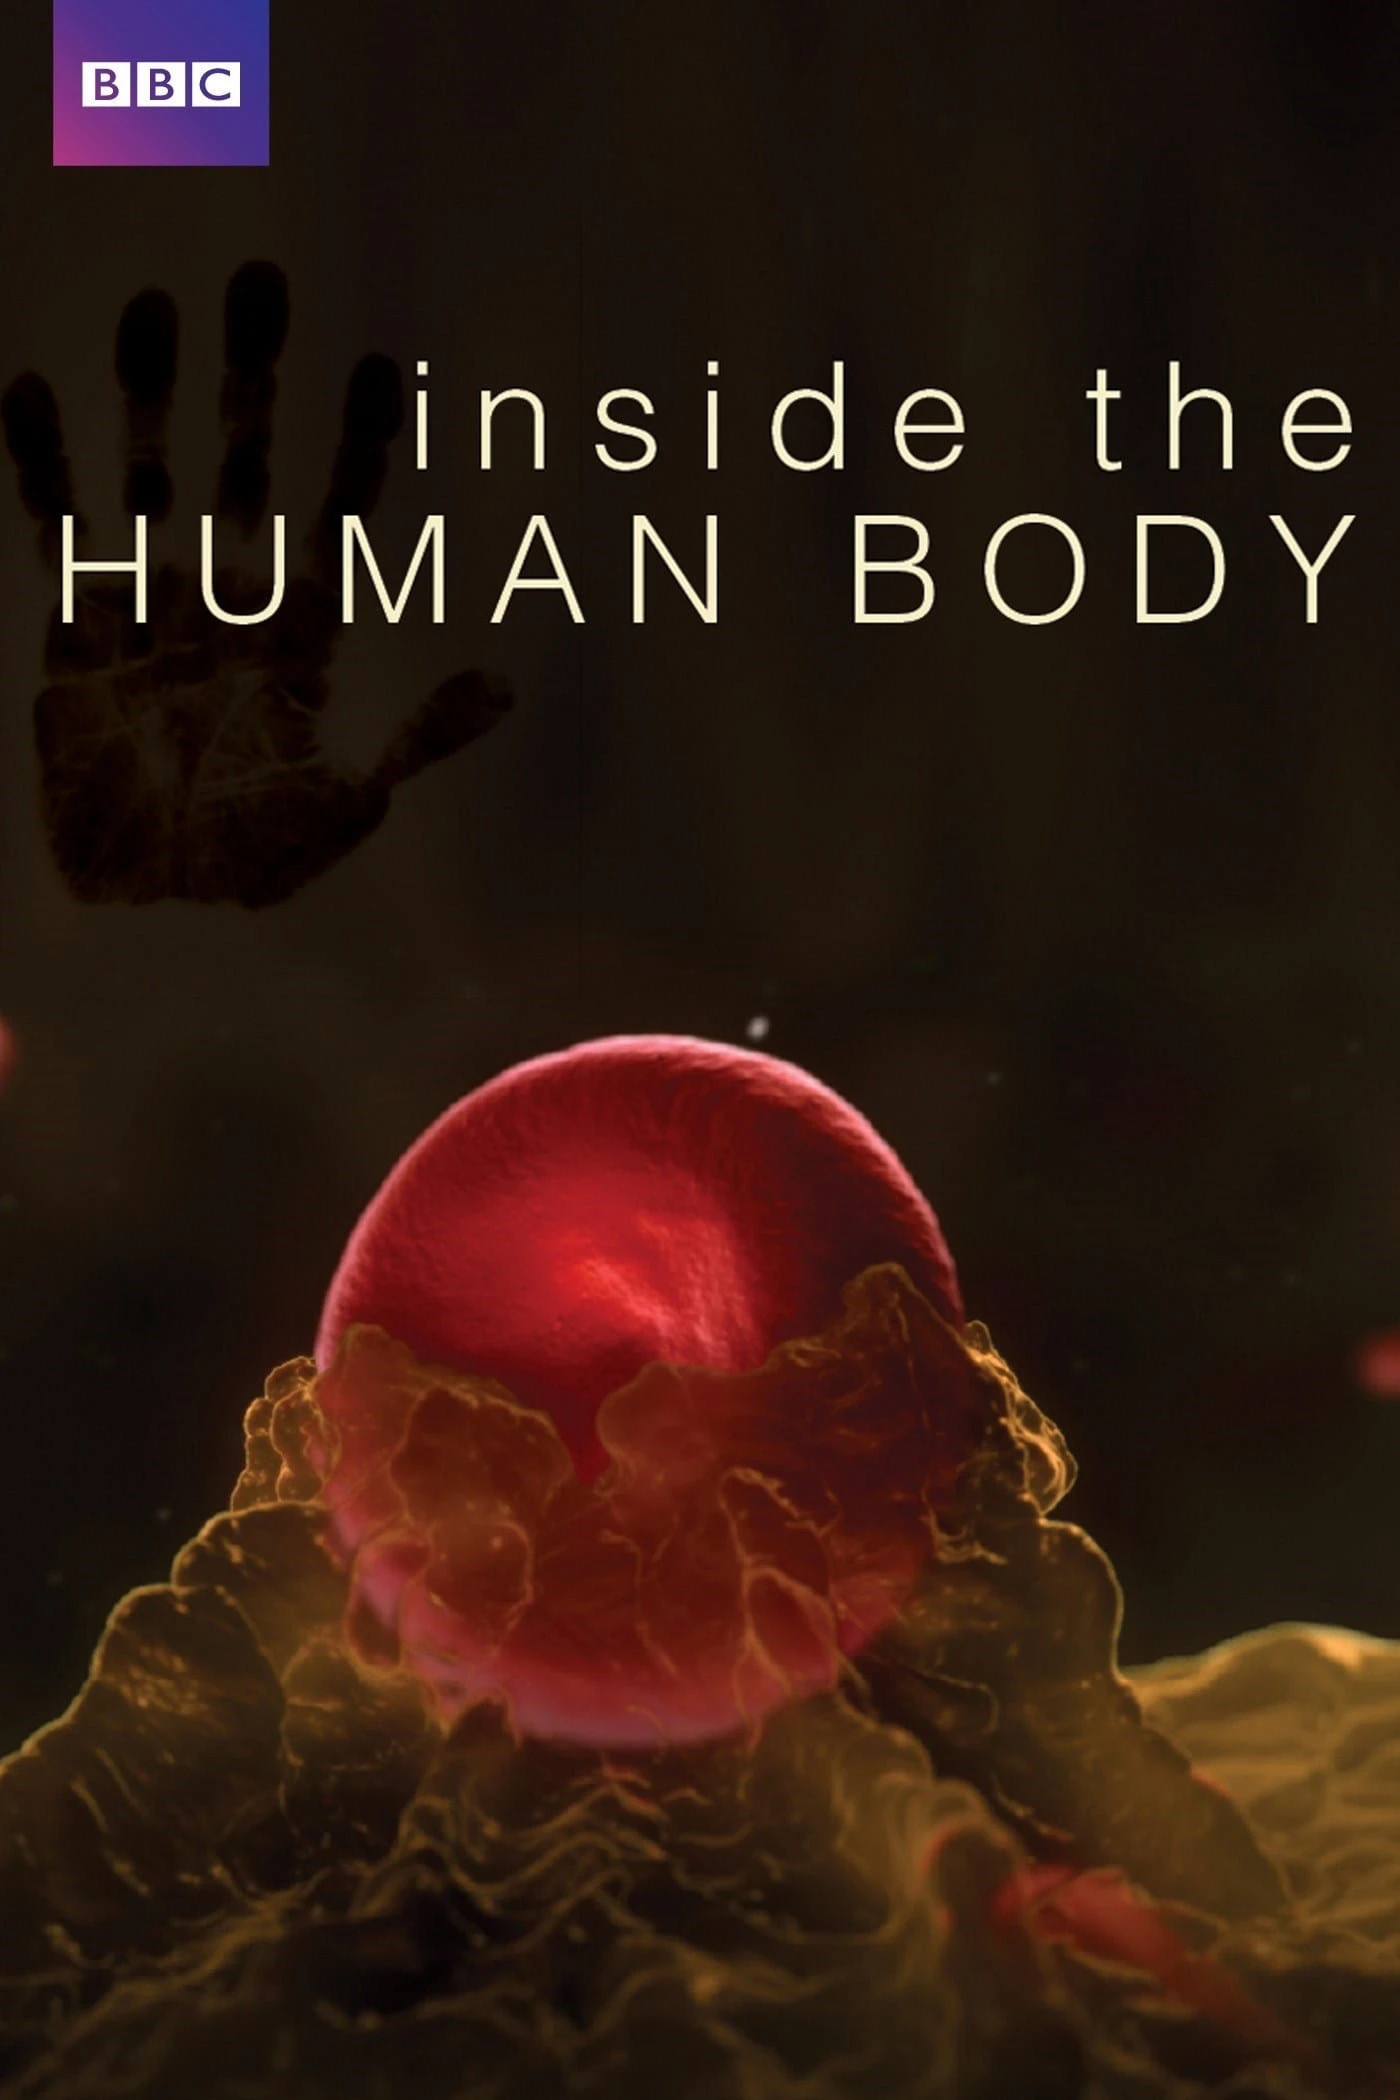 Inside the Human Body | Inside the Human Body (2011)